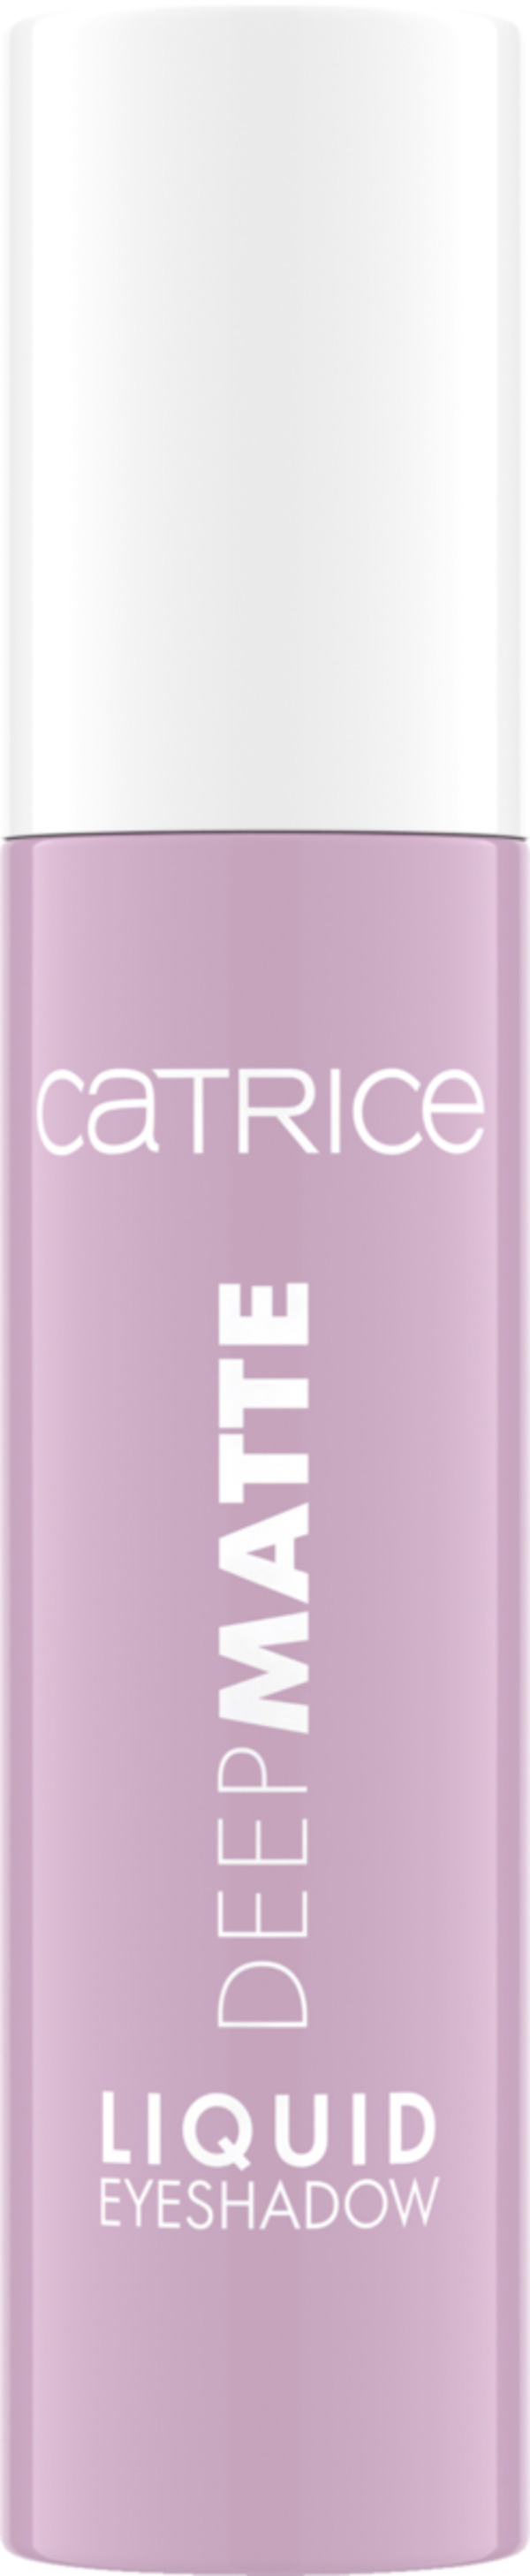 Bild 1 von Catrice Deep Matte Liquid Eyeshadow 010 Cotton Candy